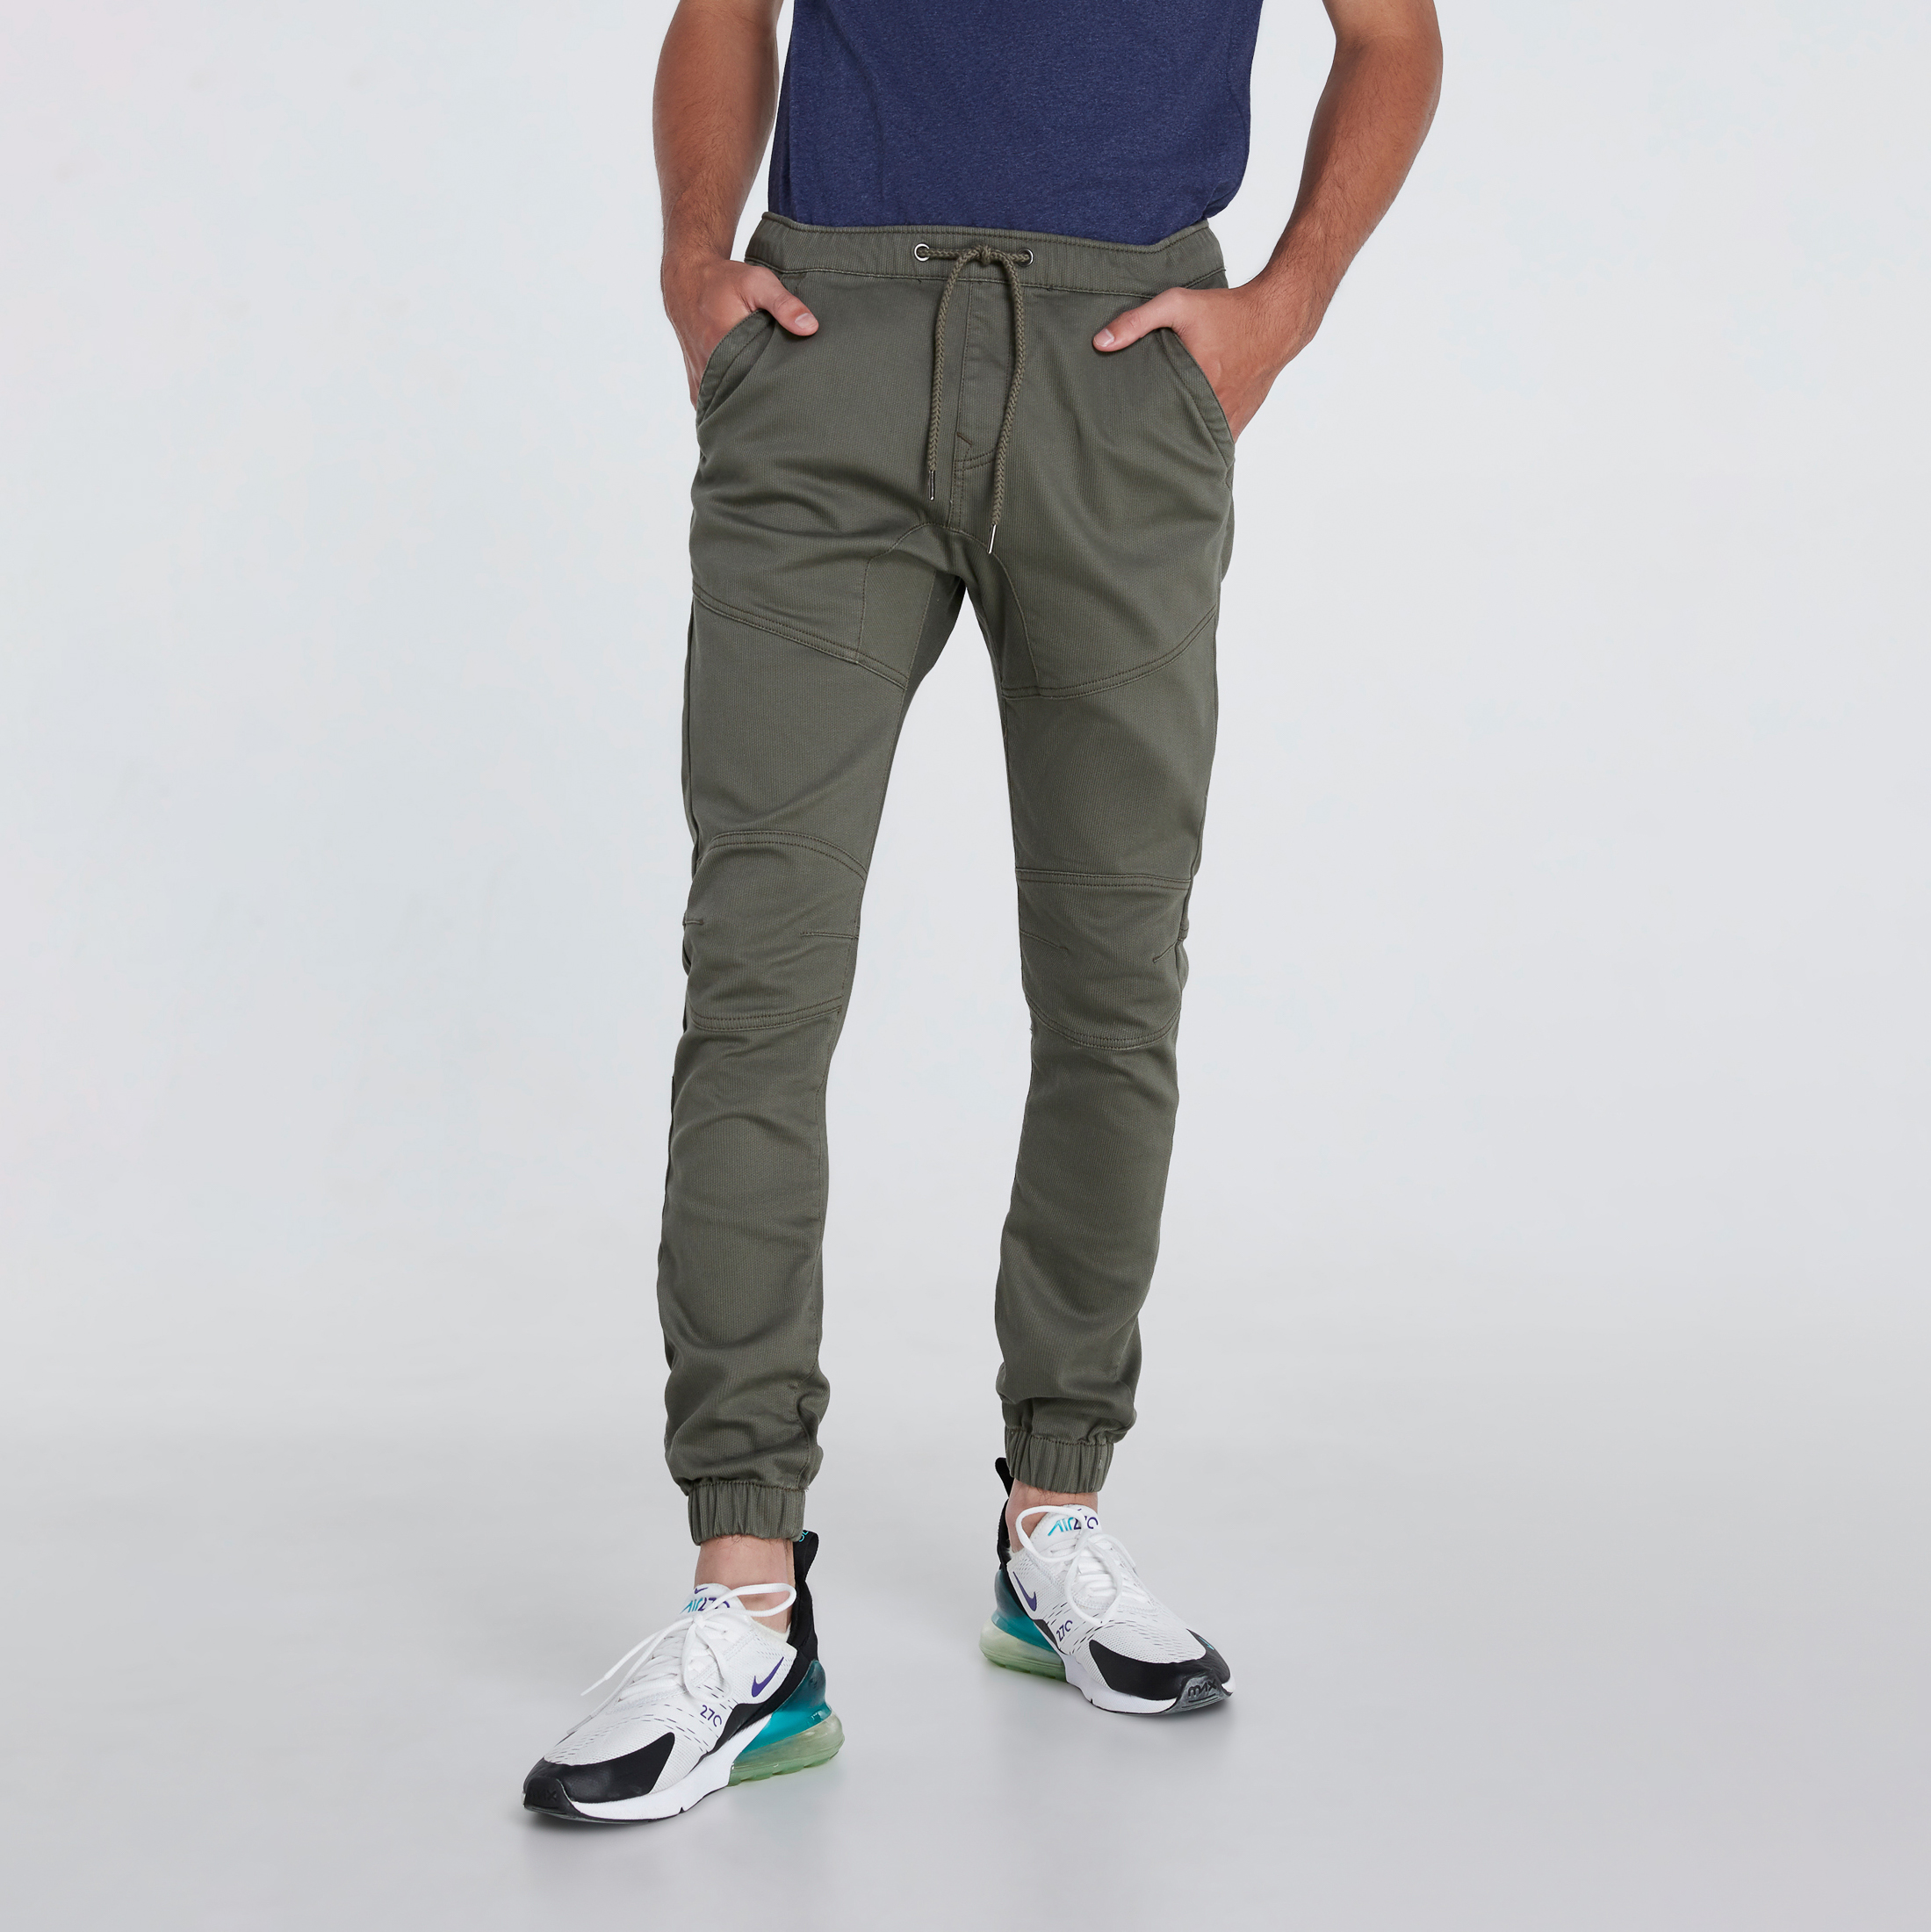 DAVIE JONES กางเกงจ็อกเกอร์ เอวยางยืด ขาจั๊ม สีเทา สีดำ สีน้ำตาล สีกากี สีเขียว สีกรม Elasticated Joggers